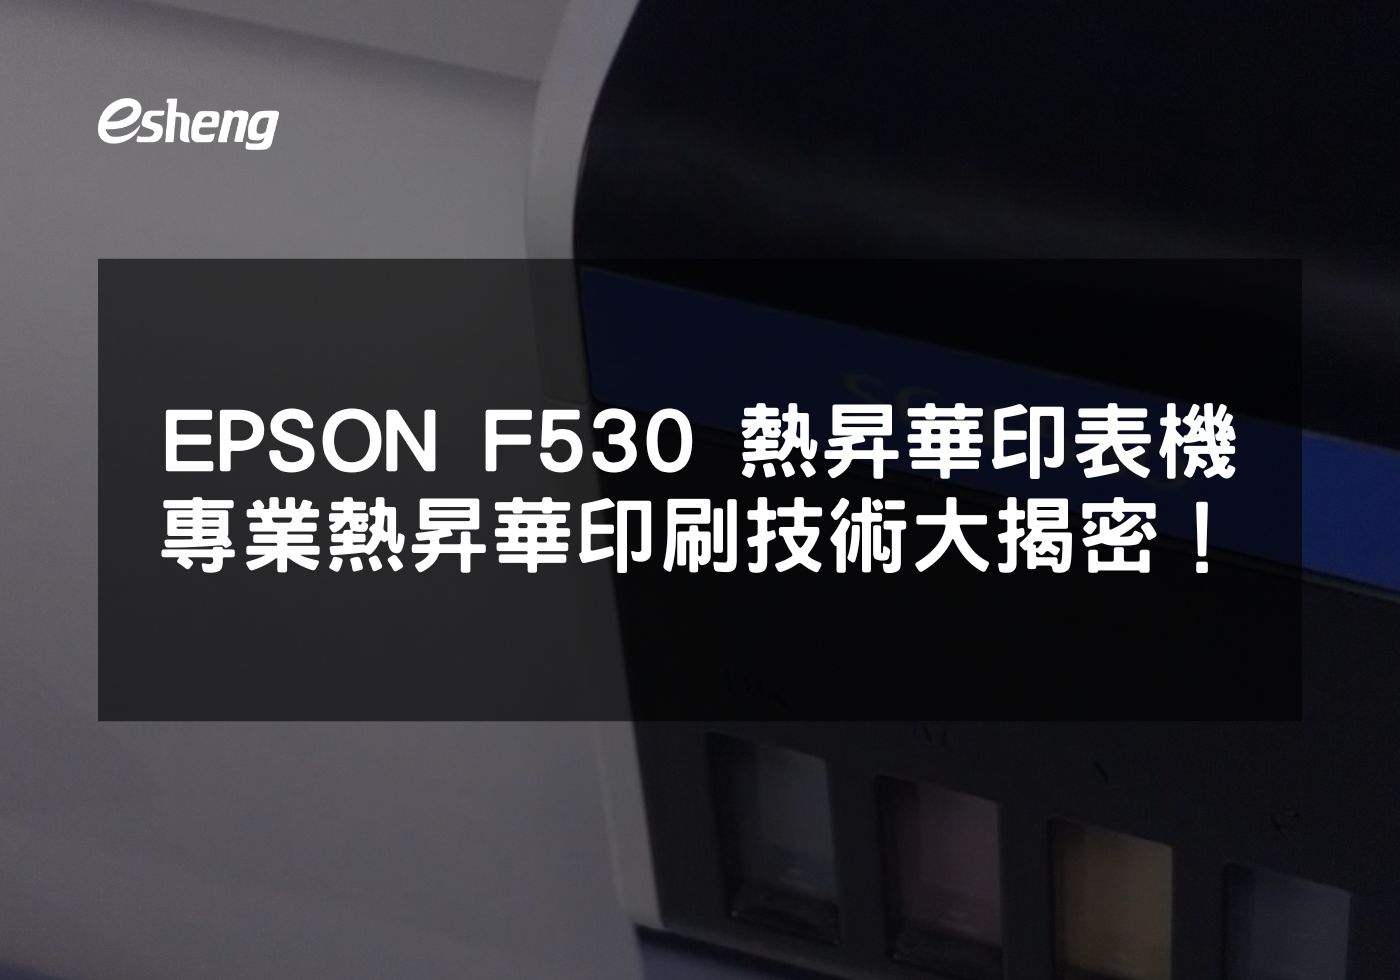 EPSON F530 熱昇華印表機 專業熱昇華印刷技術大揭密！